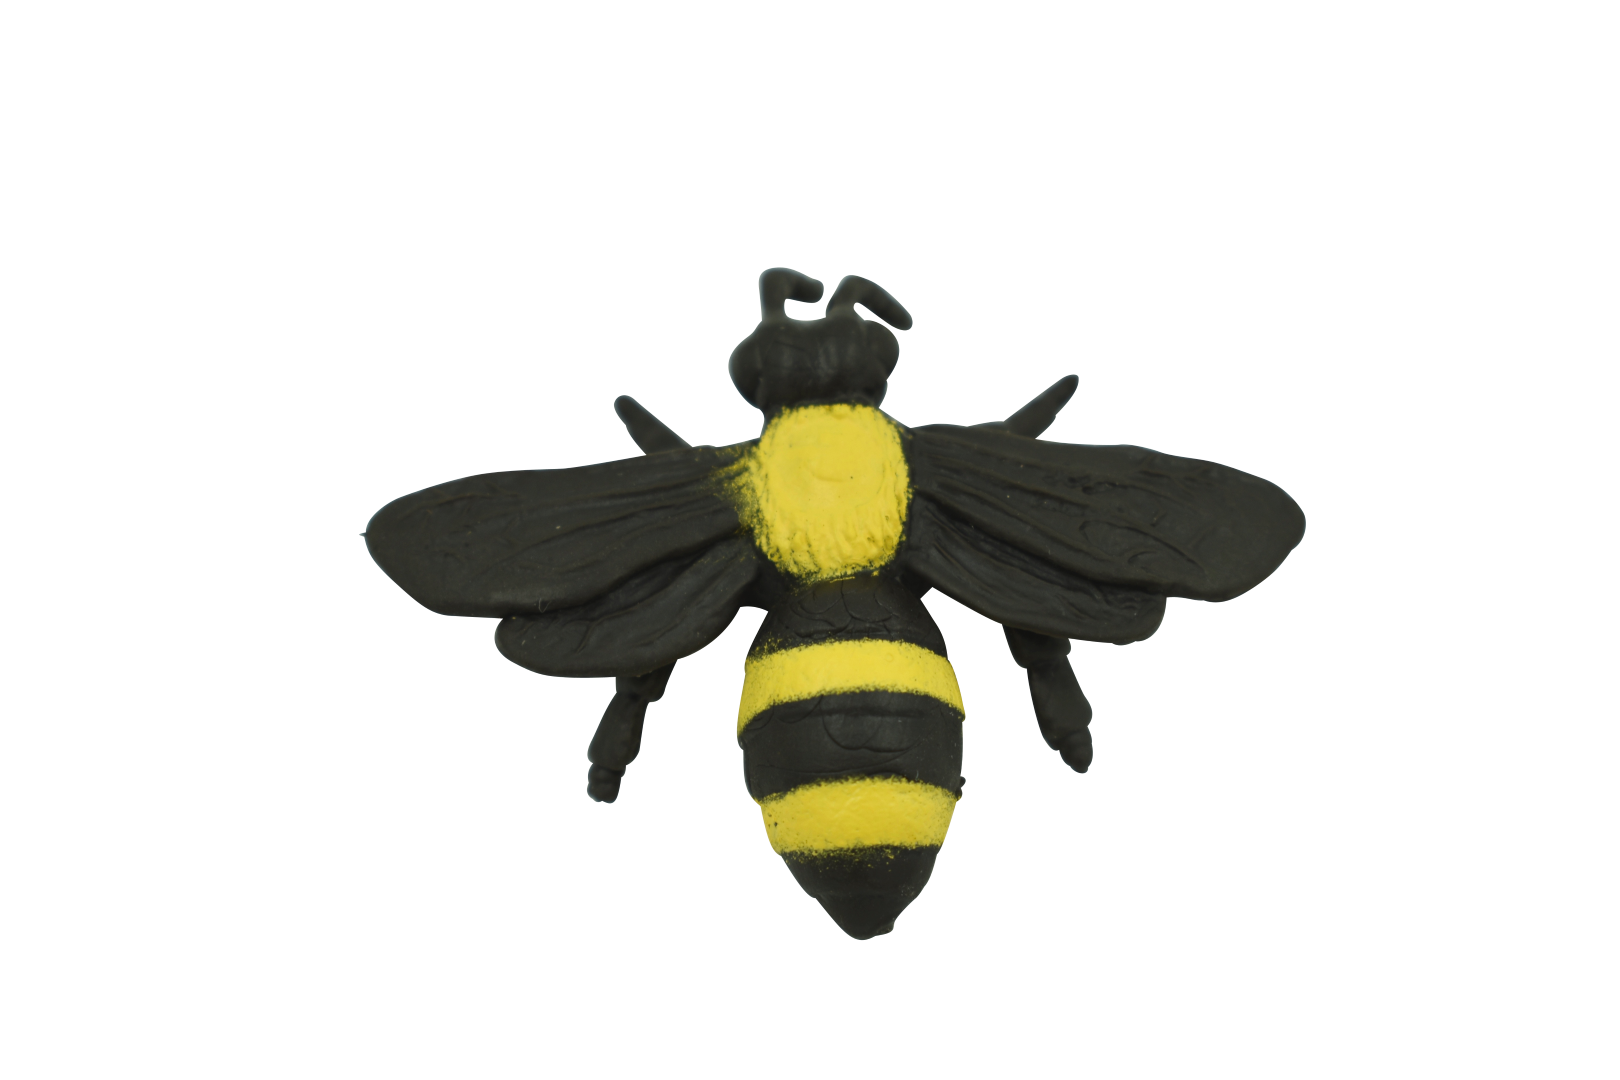 Mini Bumble Bee